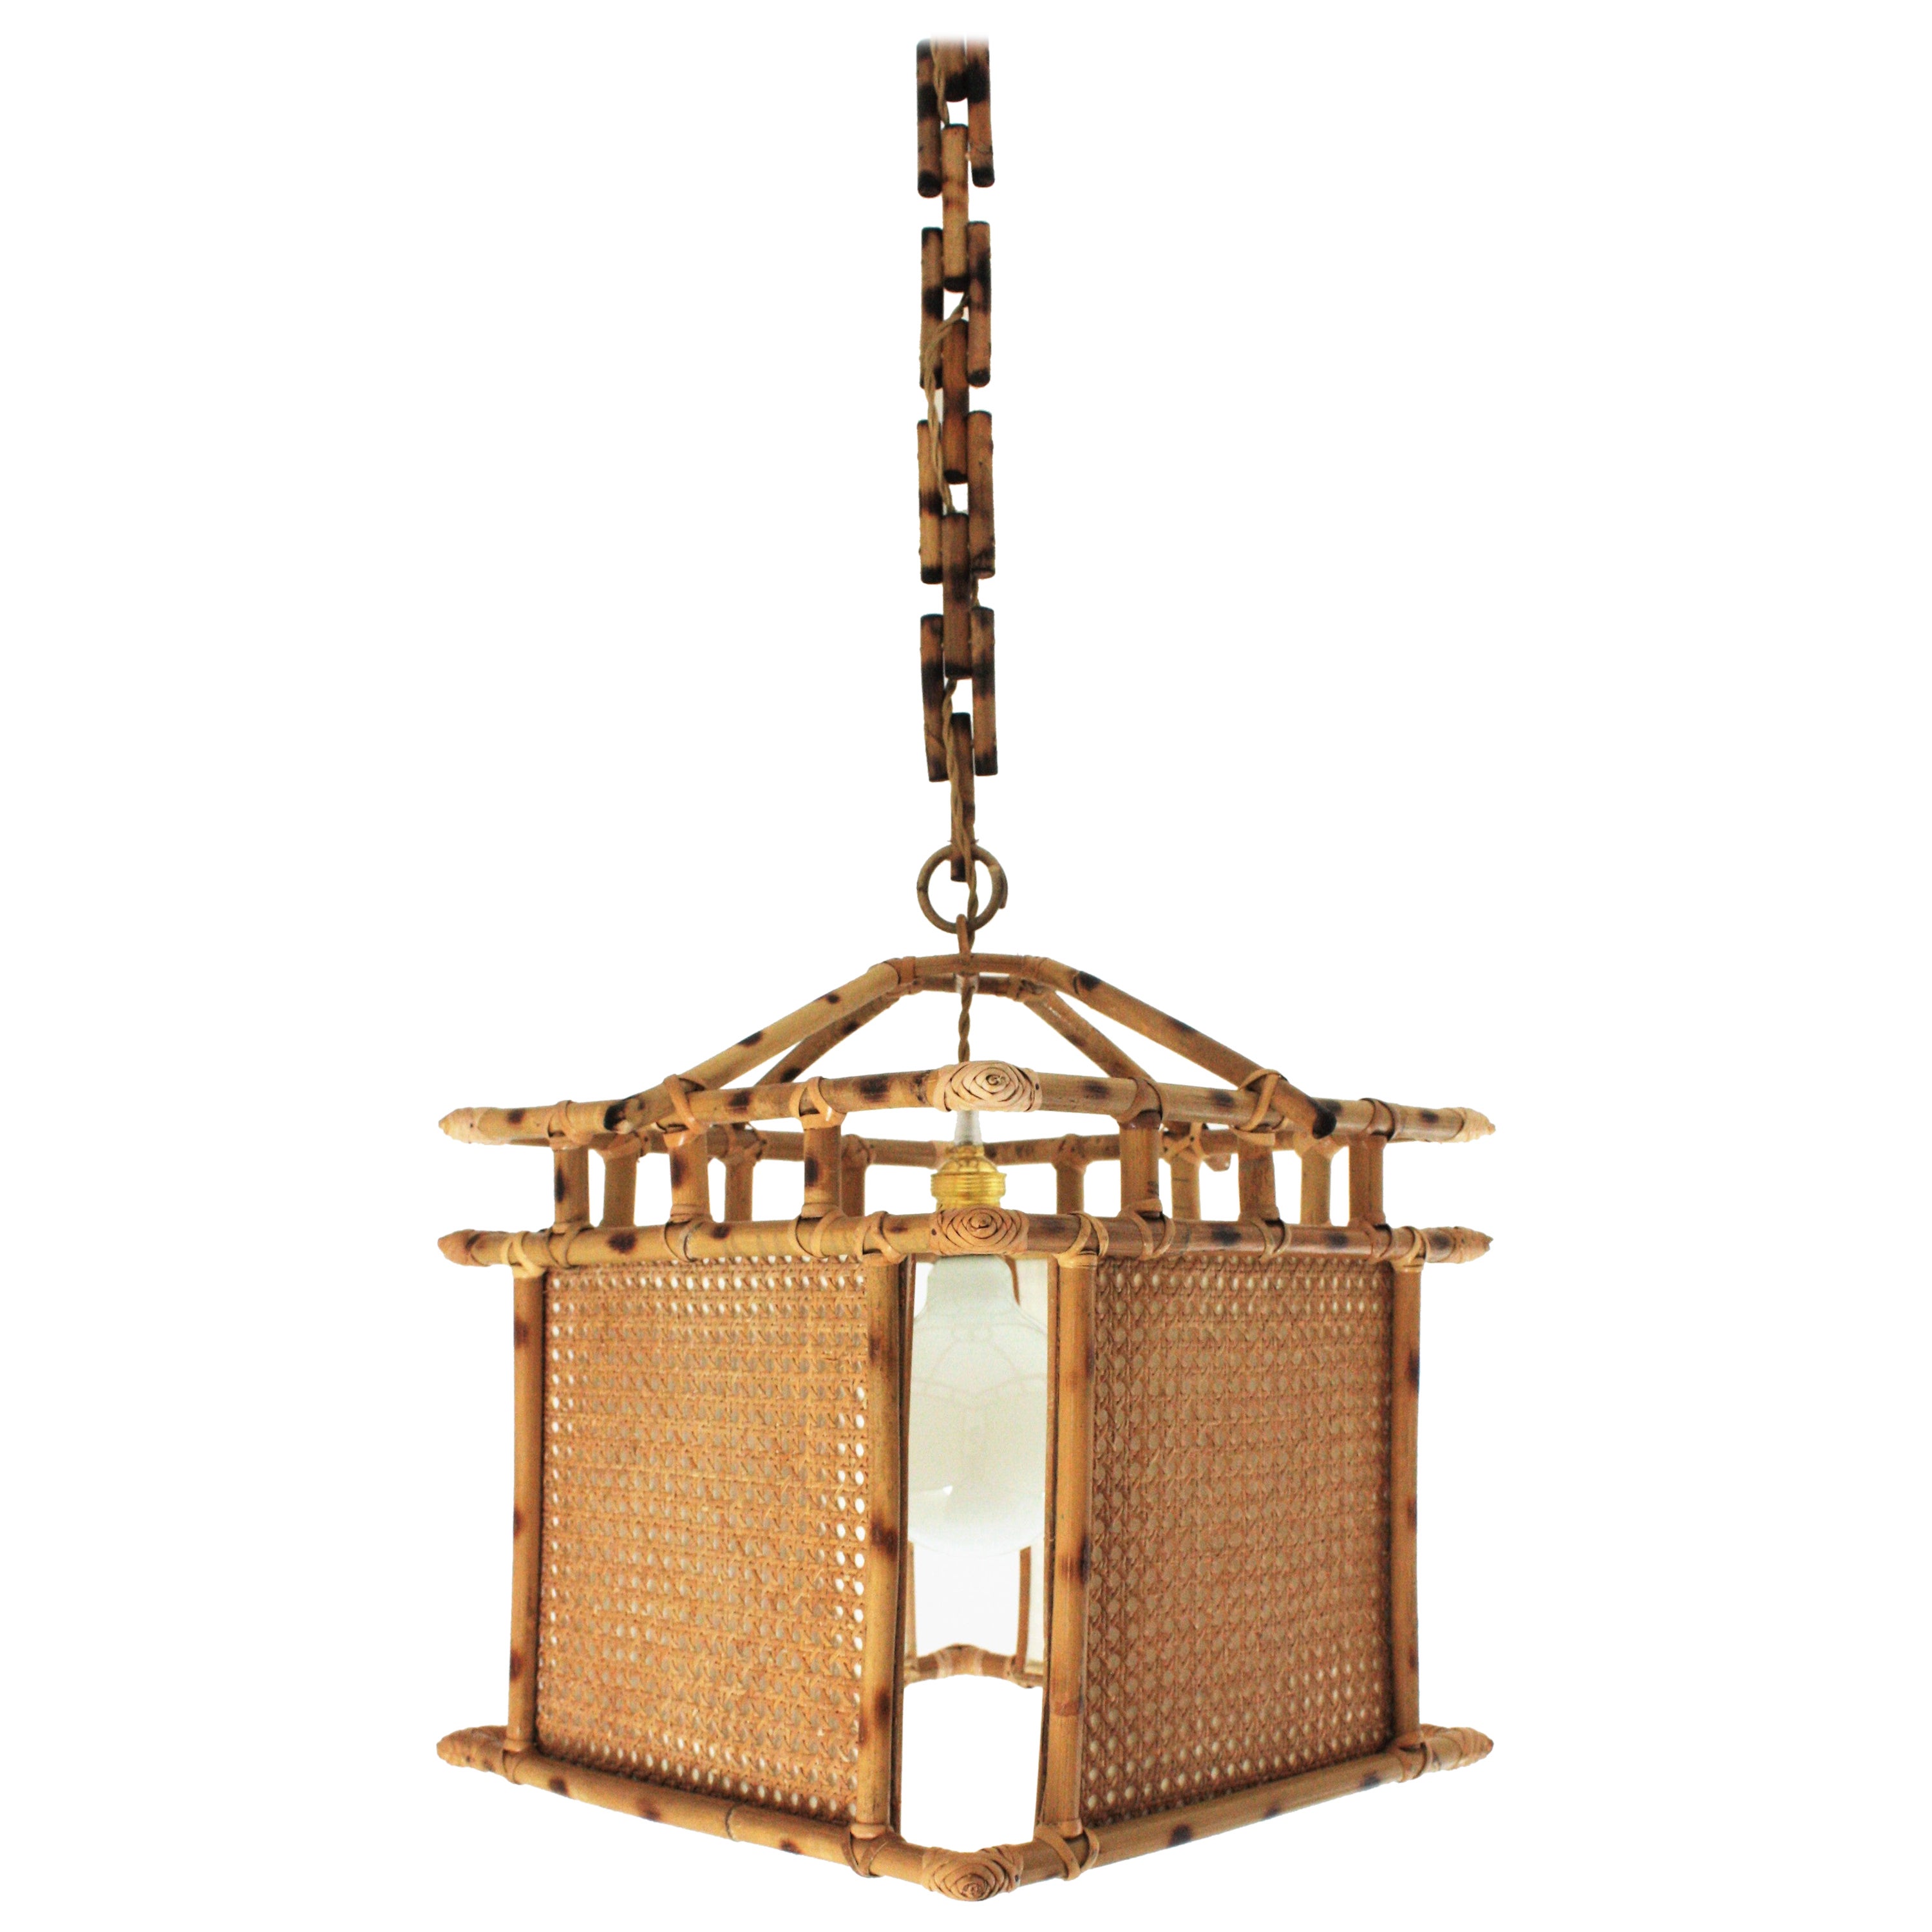 Grande lanterne suspendue espagnole en osier et rotin d'inspiration chinoiseries, années 1960